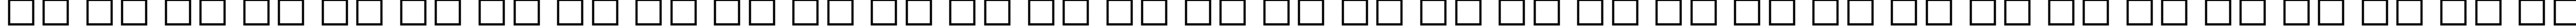 Пример написания русского алфавита шрифтом EraserDust